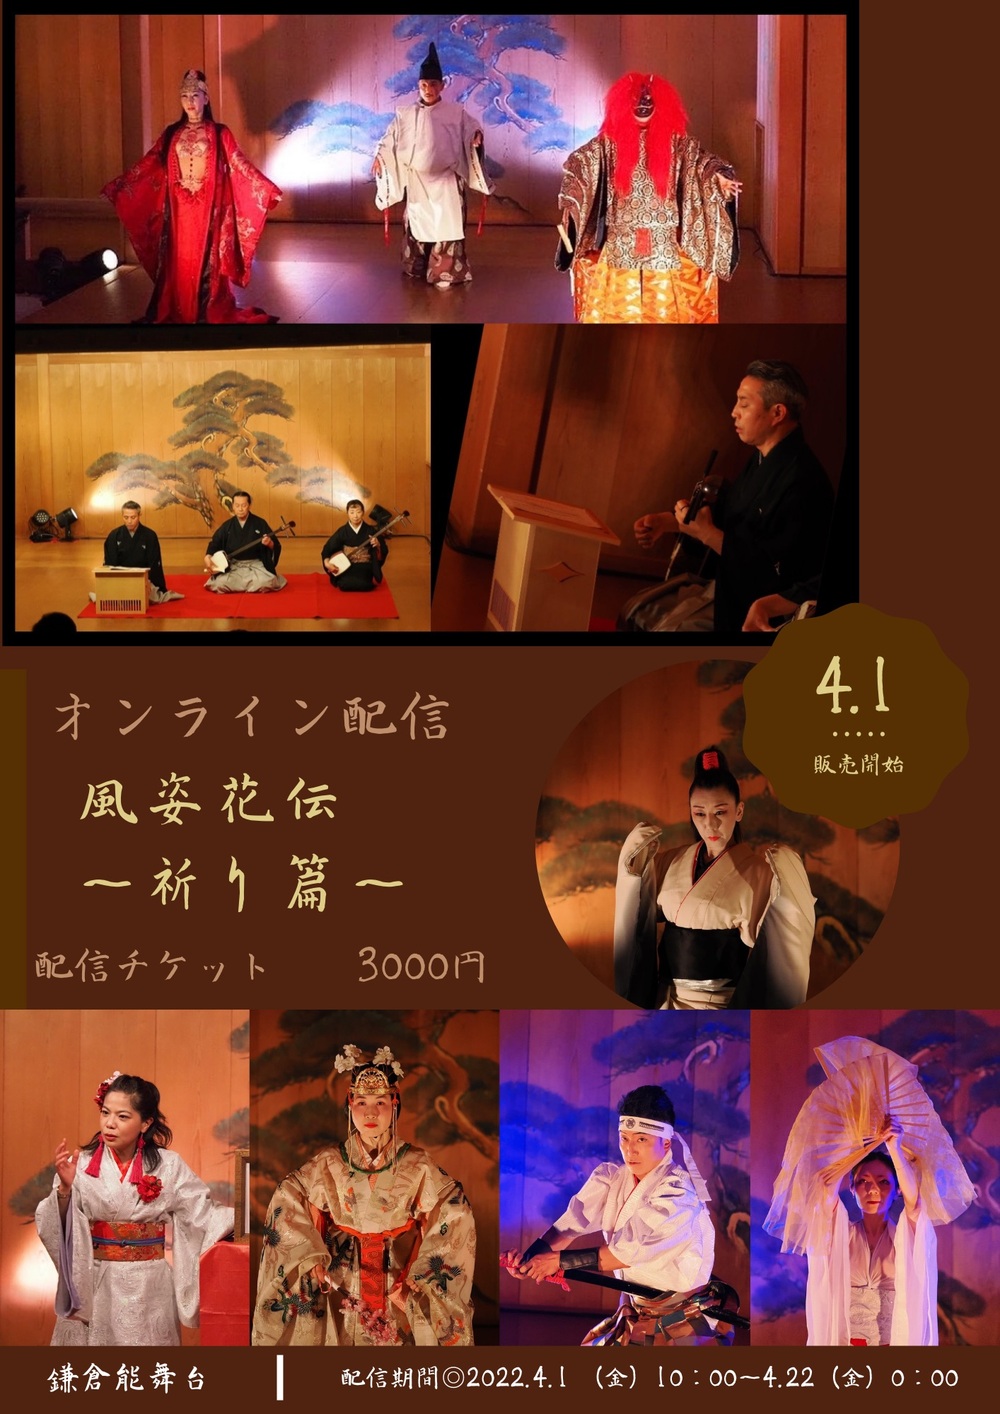 日本舞踊 のイベント検索結果 電子チケット販売サービスteket テケト 音楽コンサート ライブ配信などのイベント運営をサポート